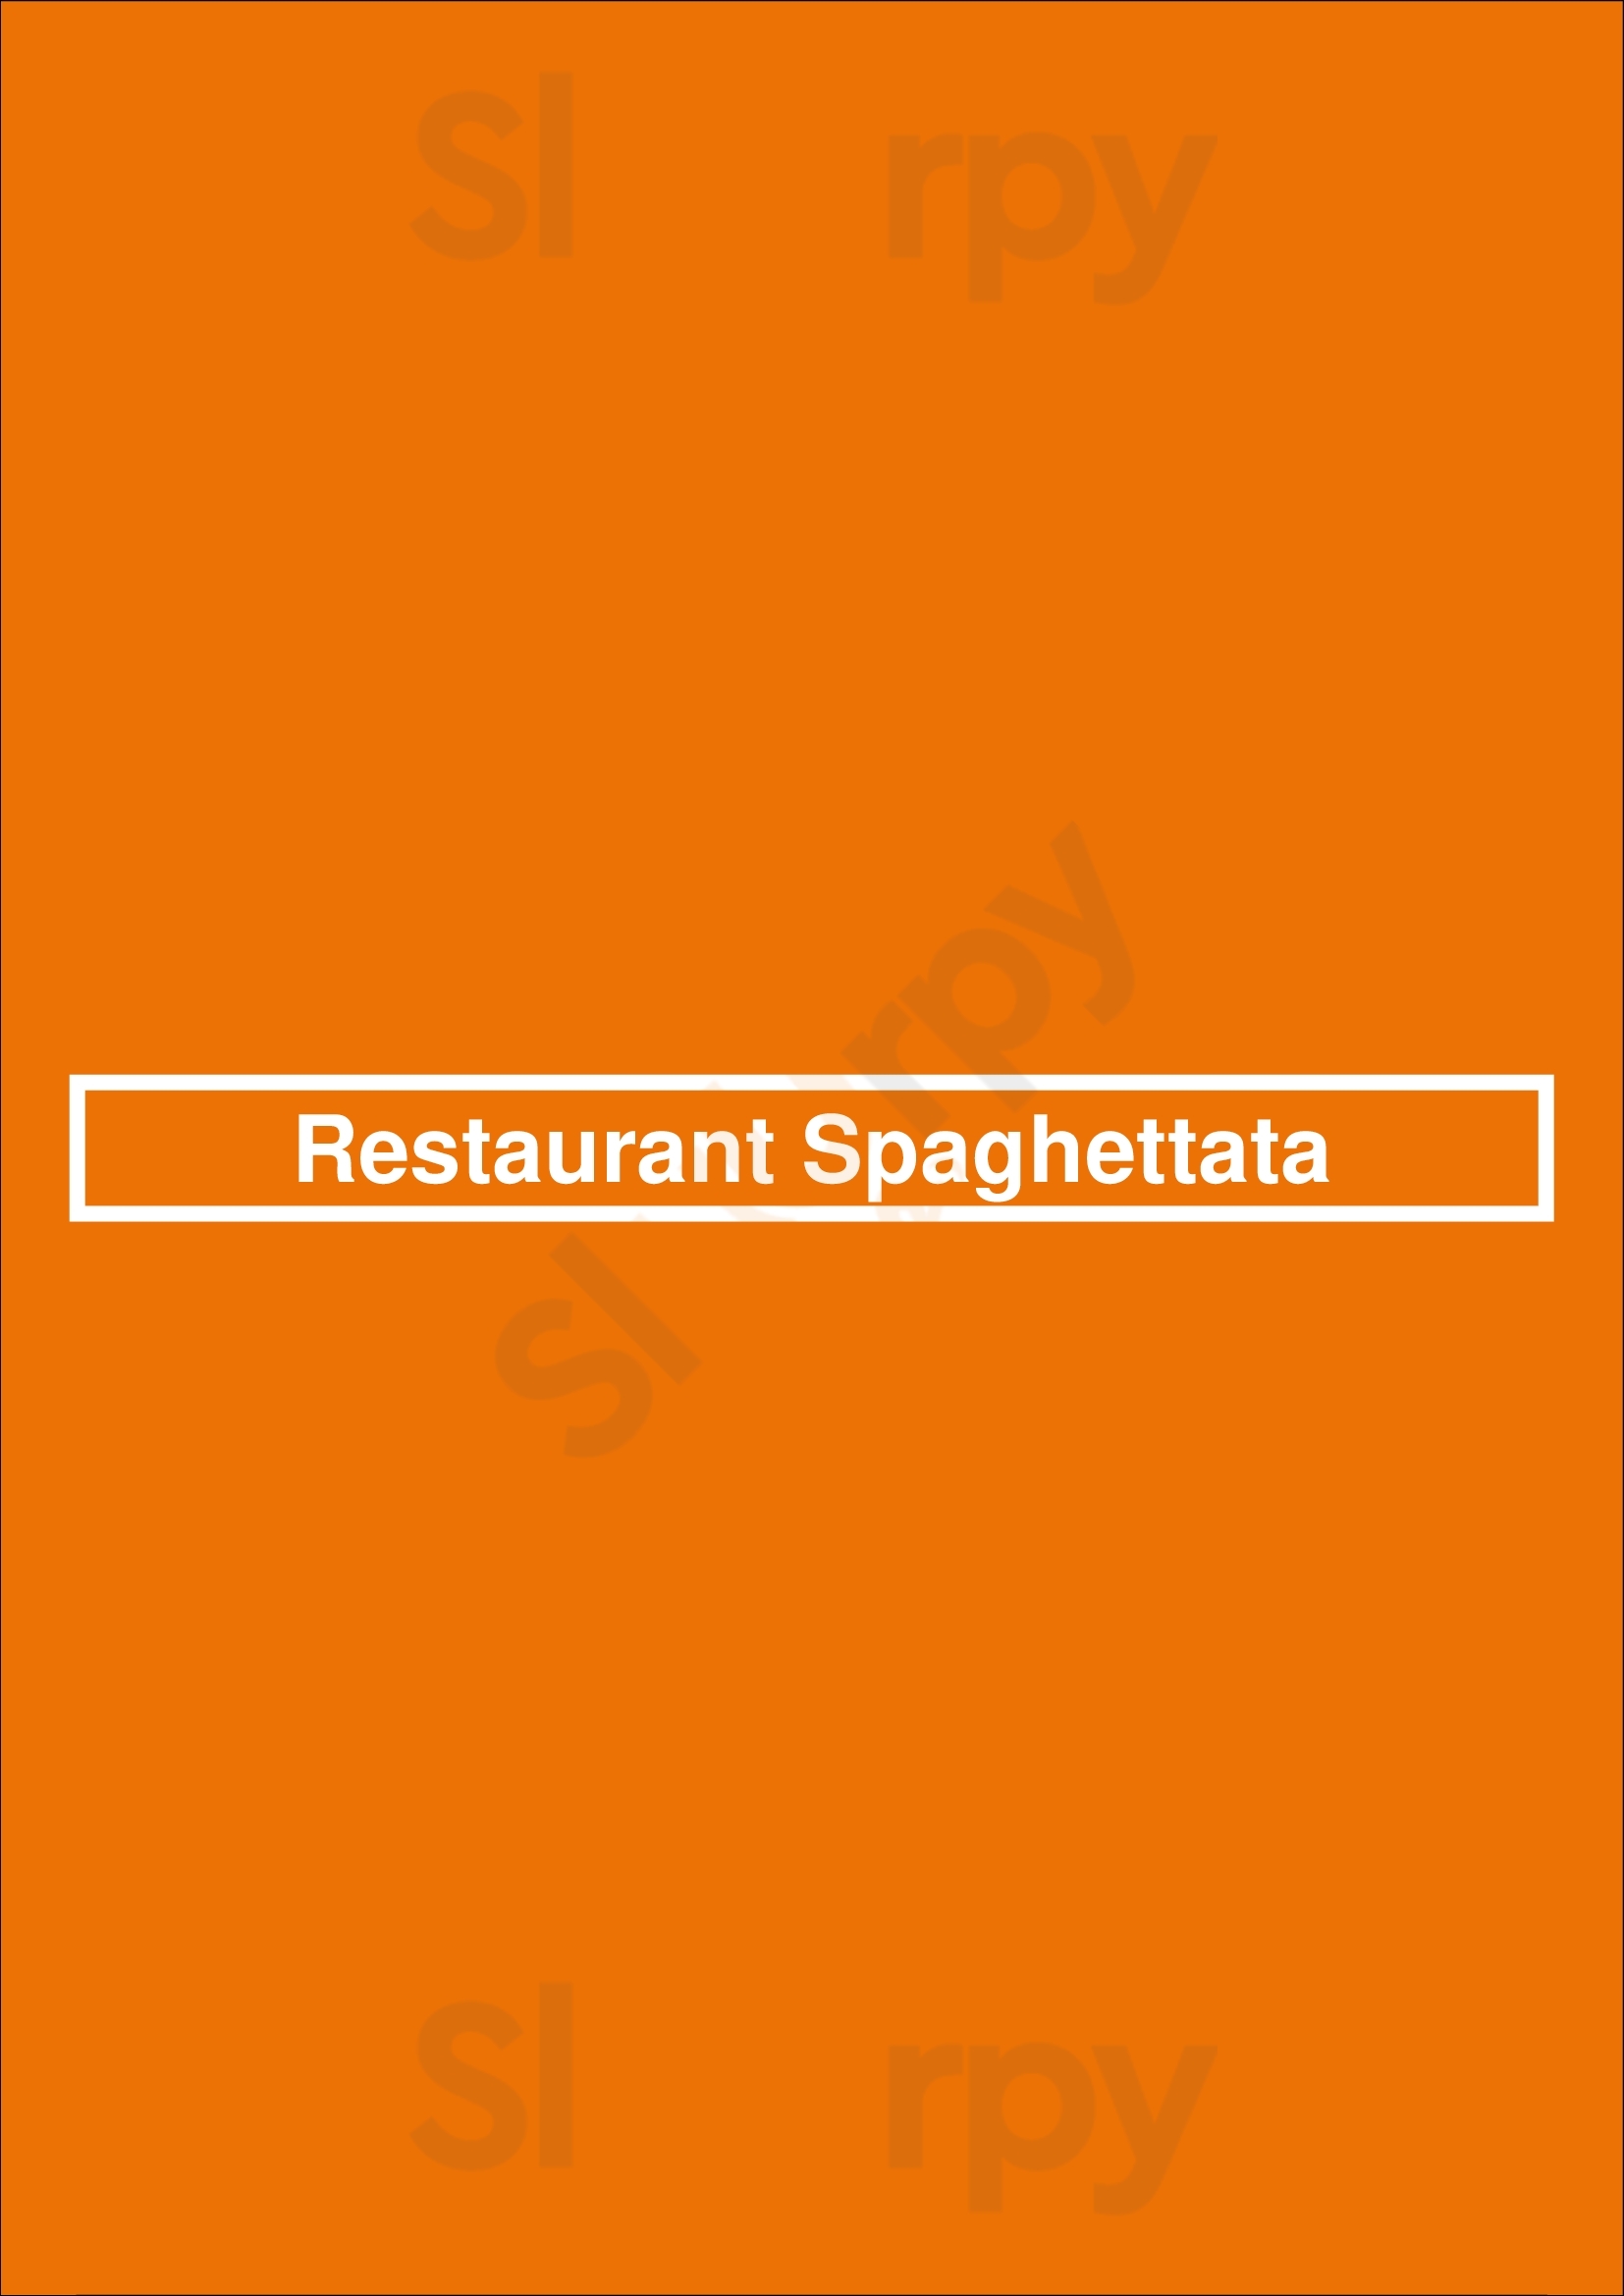 Restaurant Spaghettata Rotterdam Menu - 1